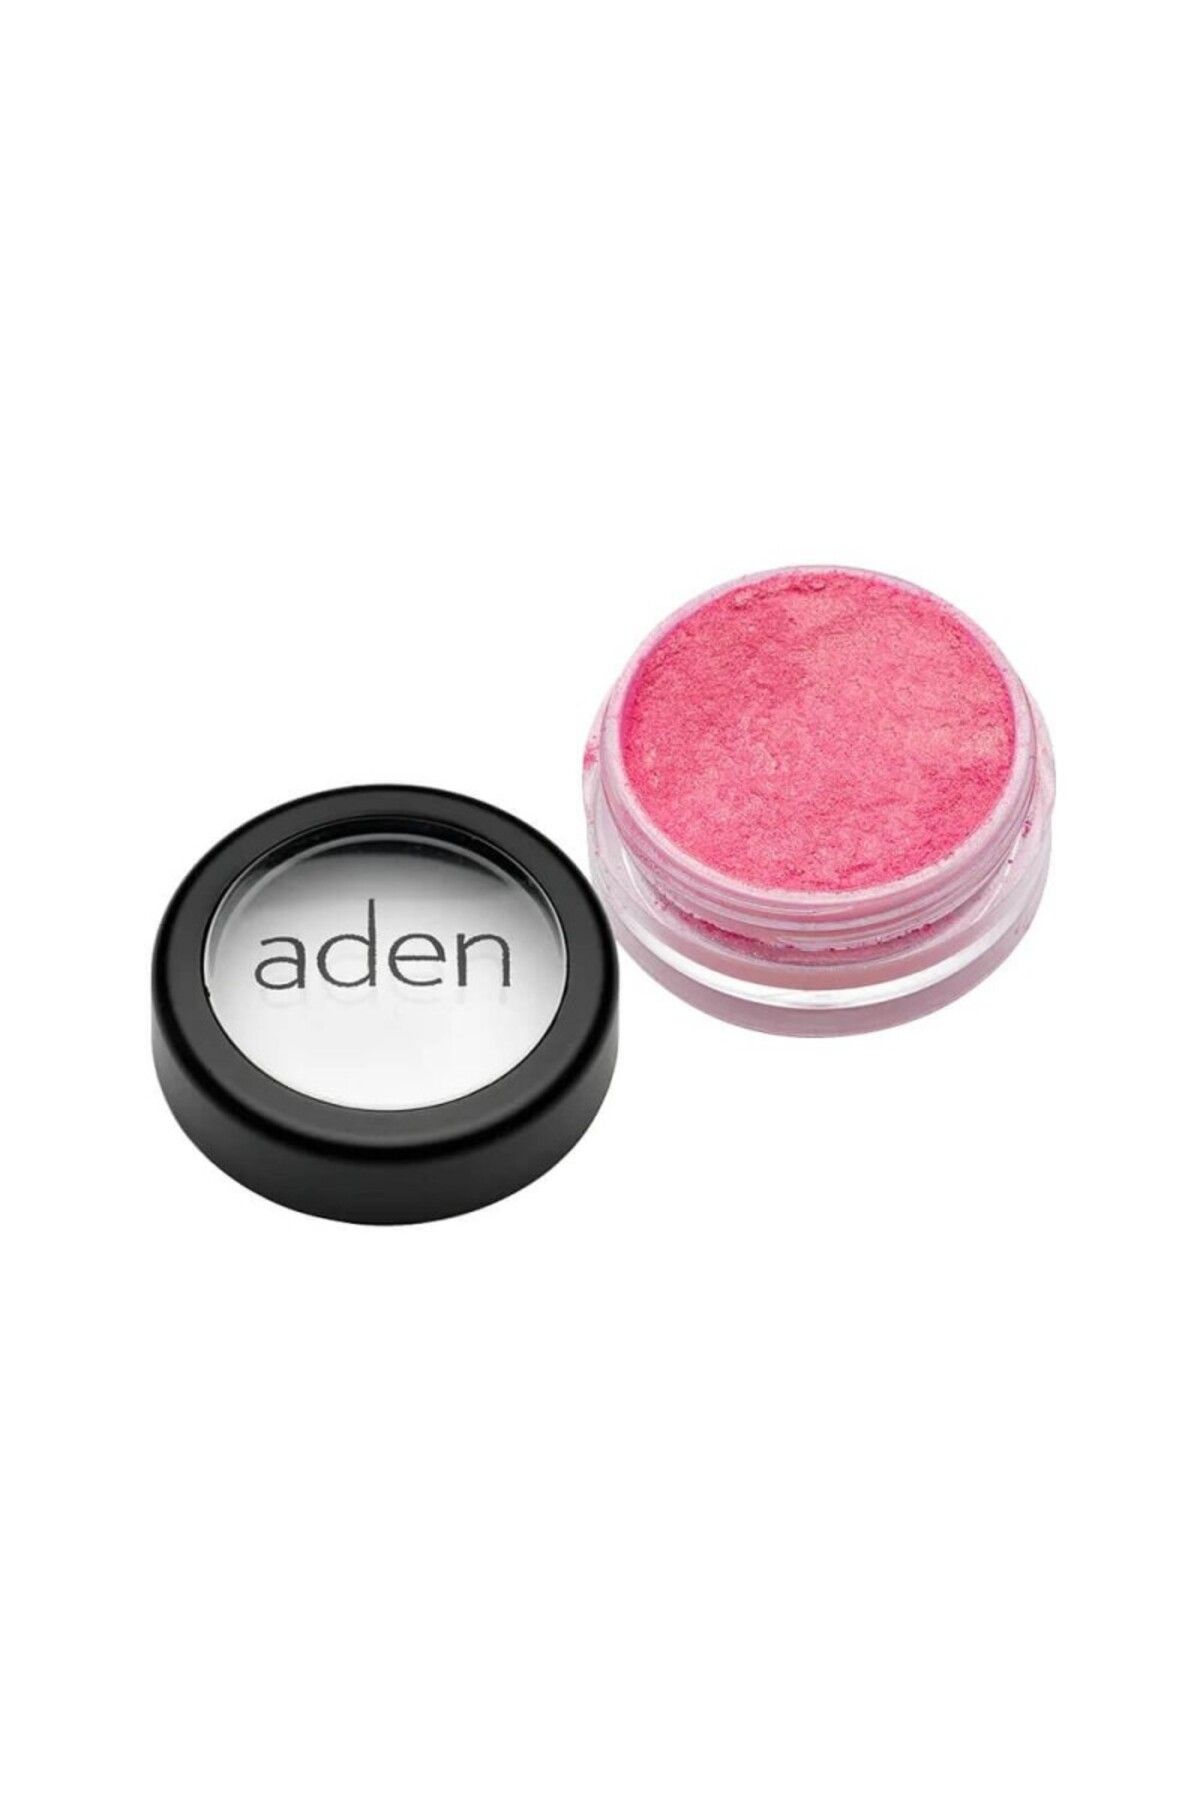 Aden Pigment Powder ( 06 Marmelade )